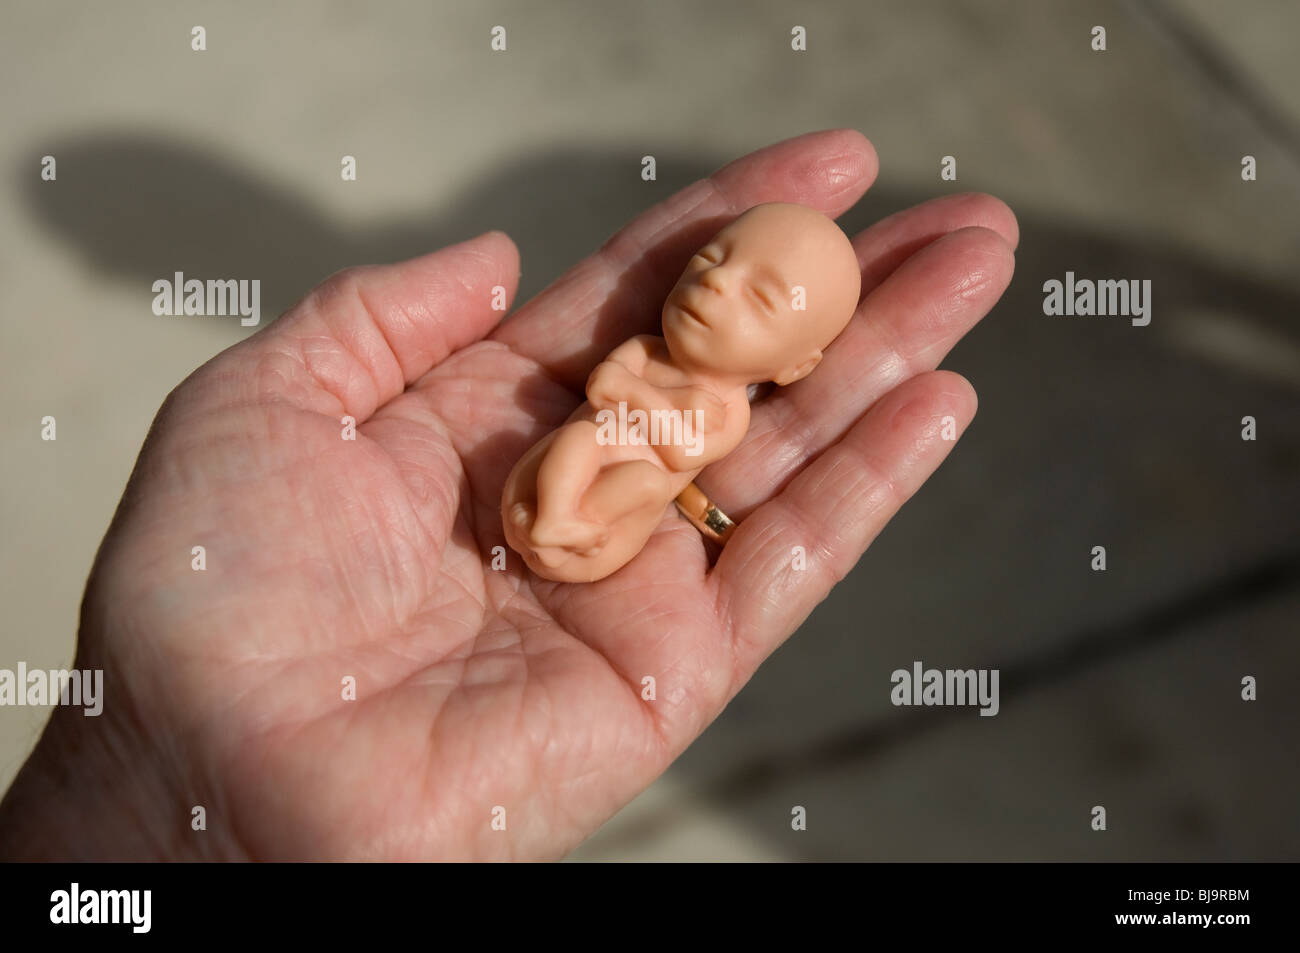 Modello di dodici settimane vecchio feto tenuto in mano femmina Foto Stock